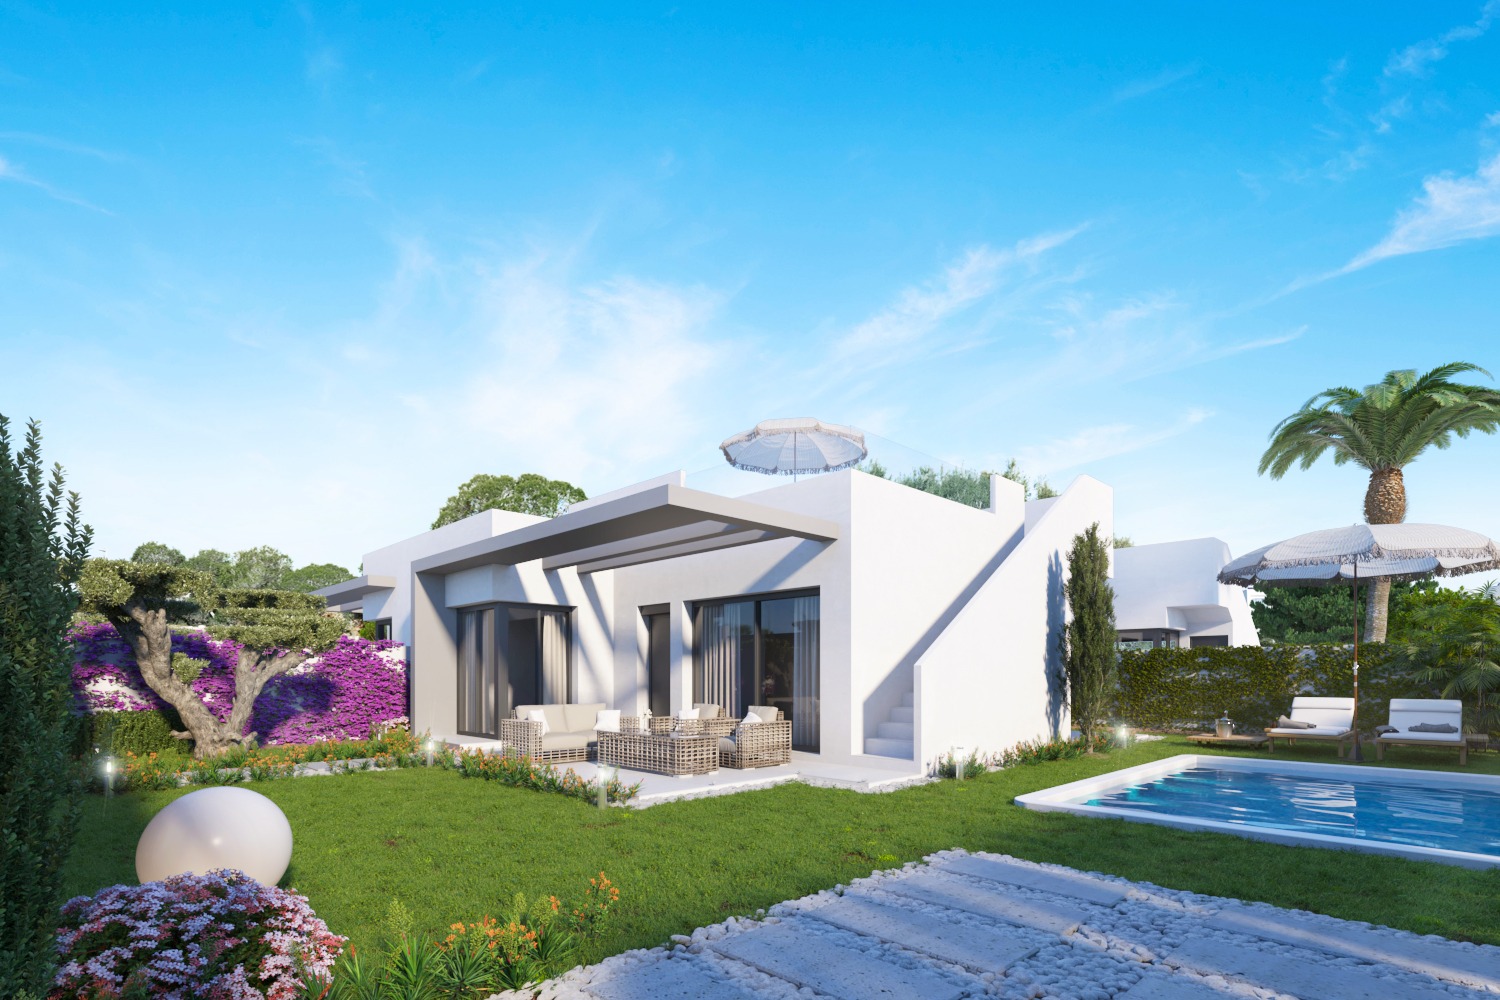 NEW PROJECT Semi-Detached One Floor Villas in Vistabella, Orihuela